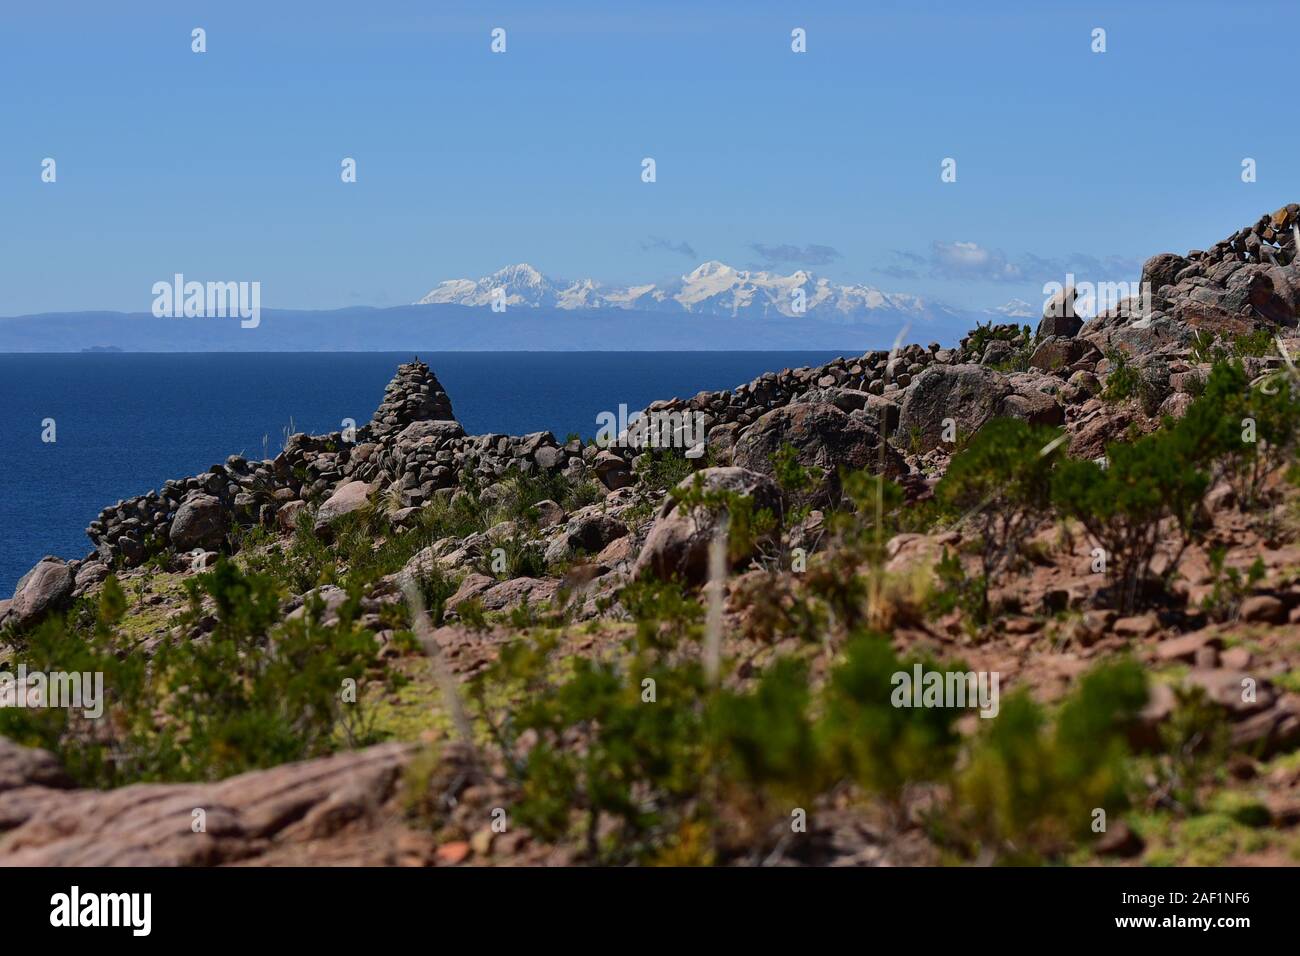 Cairn de pierre à l'île de Taquile avec vue sur la cordillère des Andes en arrière-plan le lac Titicaca, le Pérou, Amérique du Sud Banque D'Images